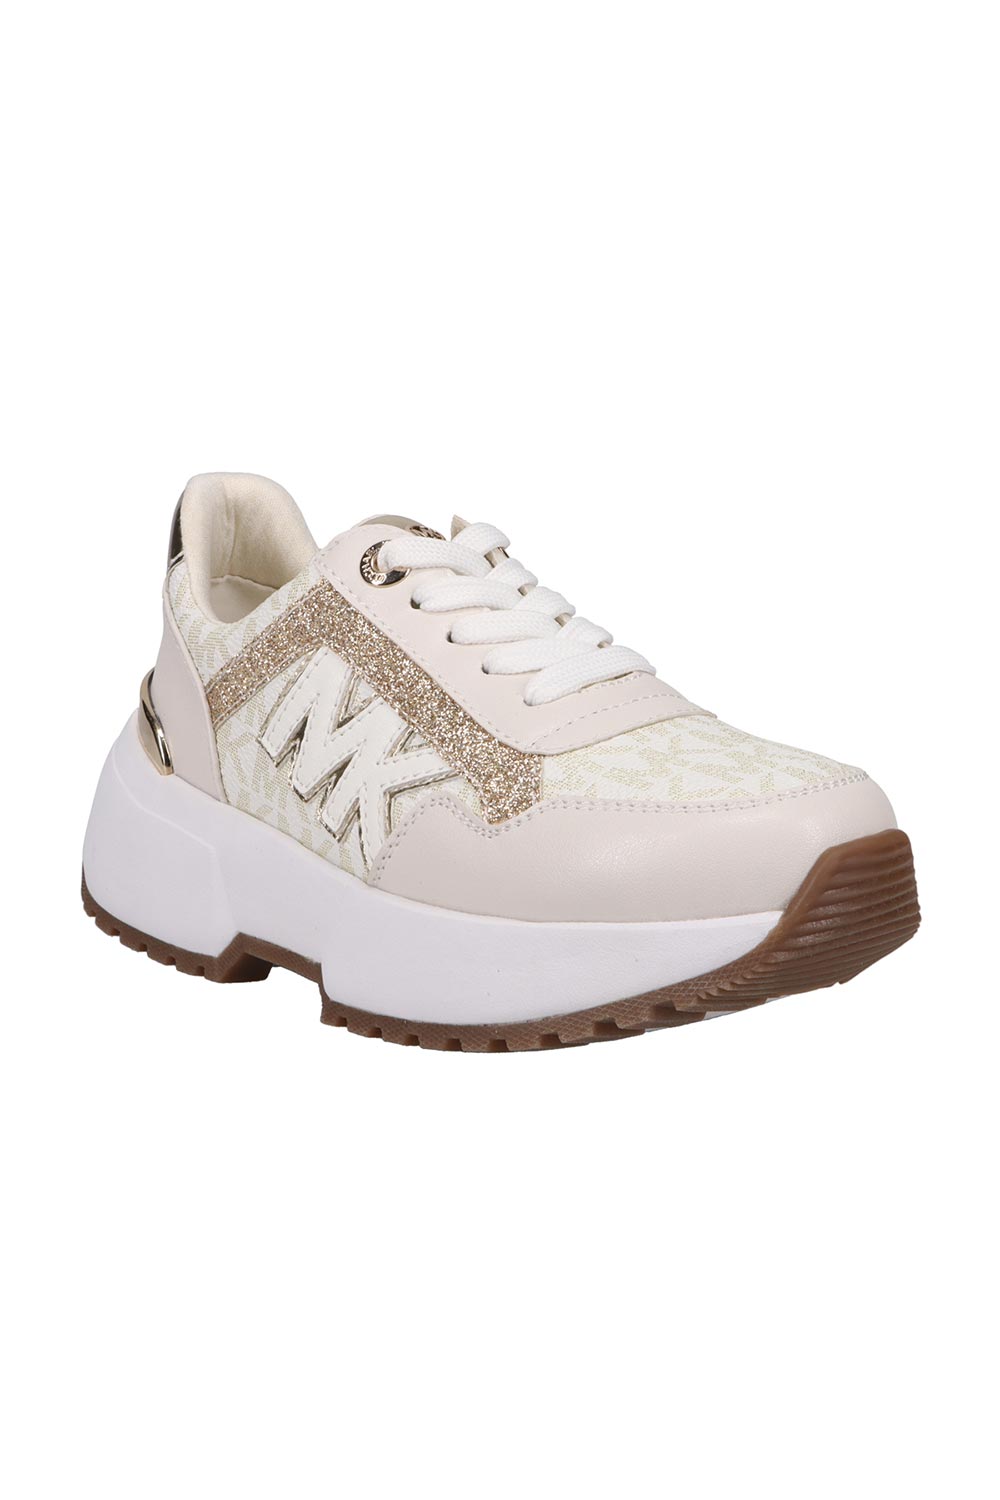 מייקל קורס נעלי סניקרס Cosmo Maddy בצבע שמנת לנשים-Michael Kors-34.5-נאקו